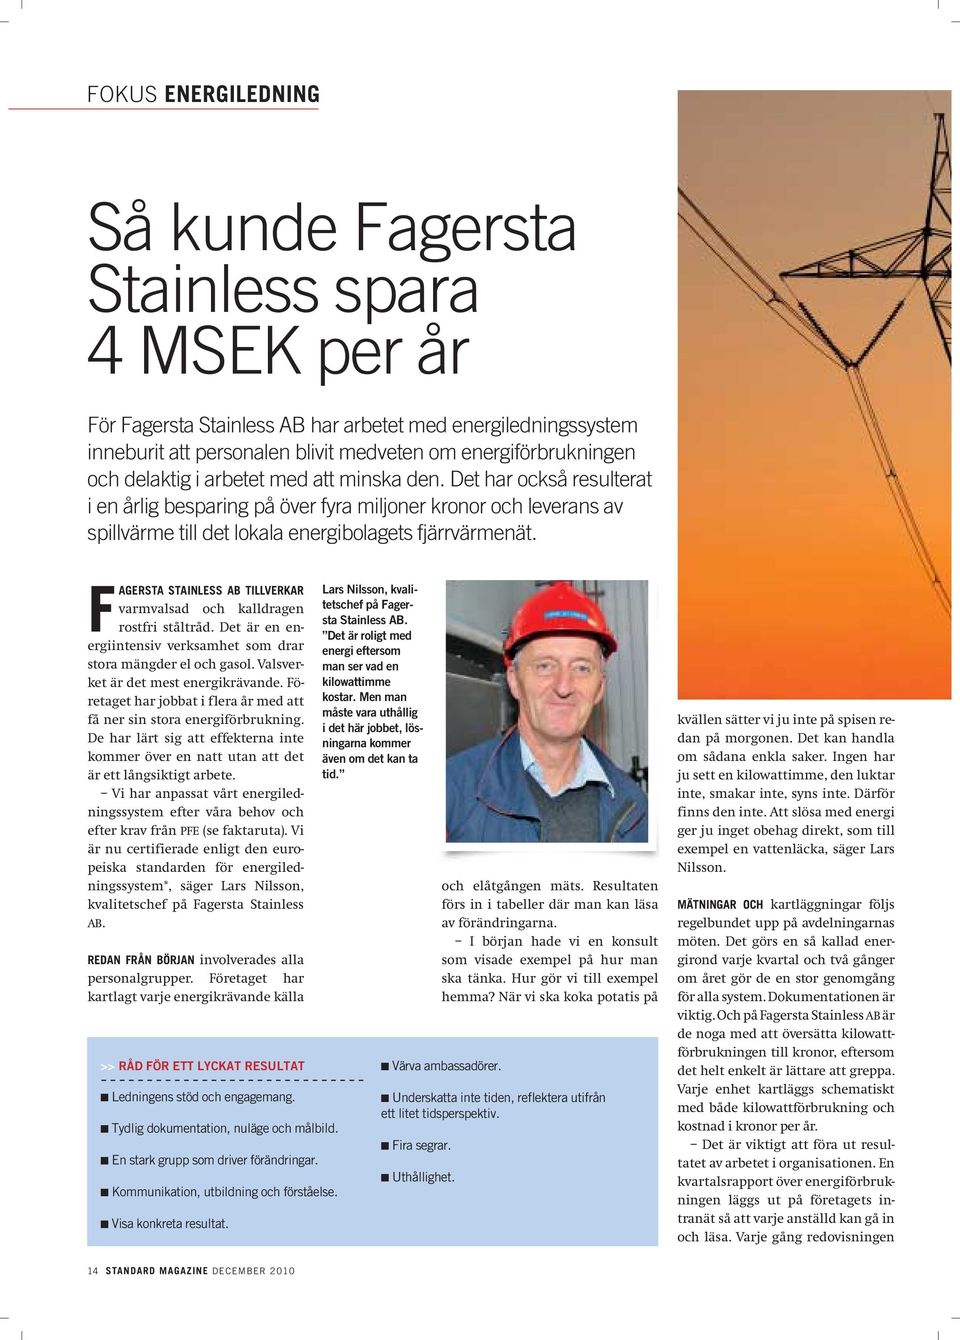 FAGERSTA STAINLESS AB TILLVERKAR varmvalsad och kalldragen rostfri ståltråd. Det är en energiintensiv verksamhet som drar stora mängder el och gasol. Valsverket är det mest energikrävande.